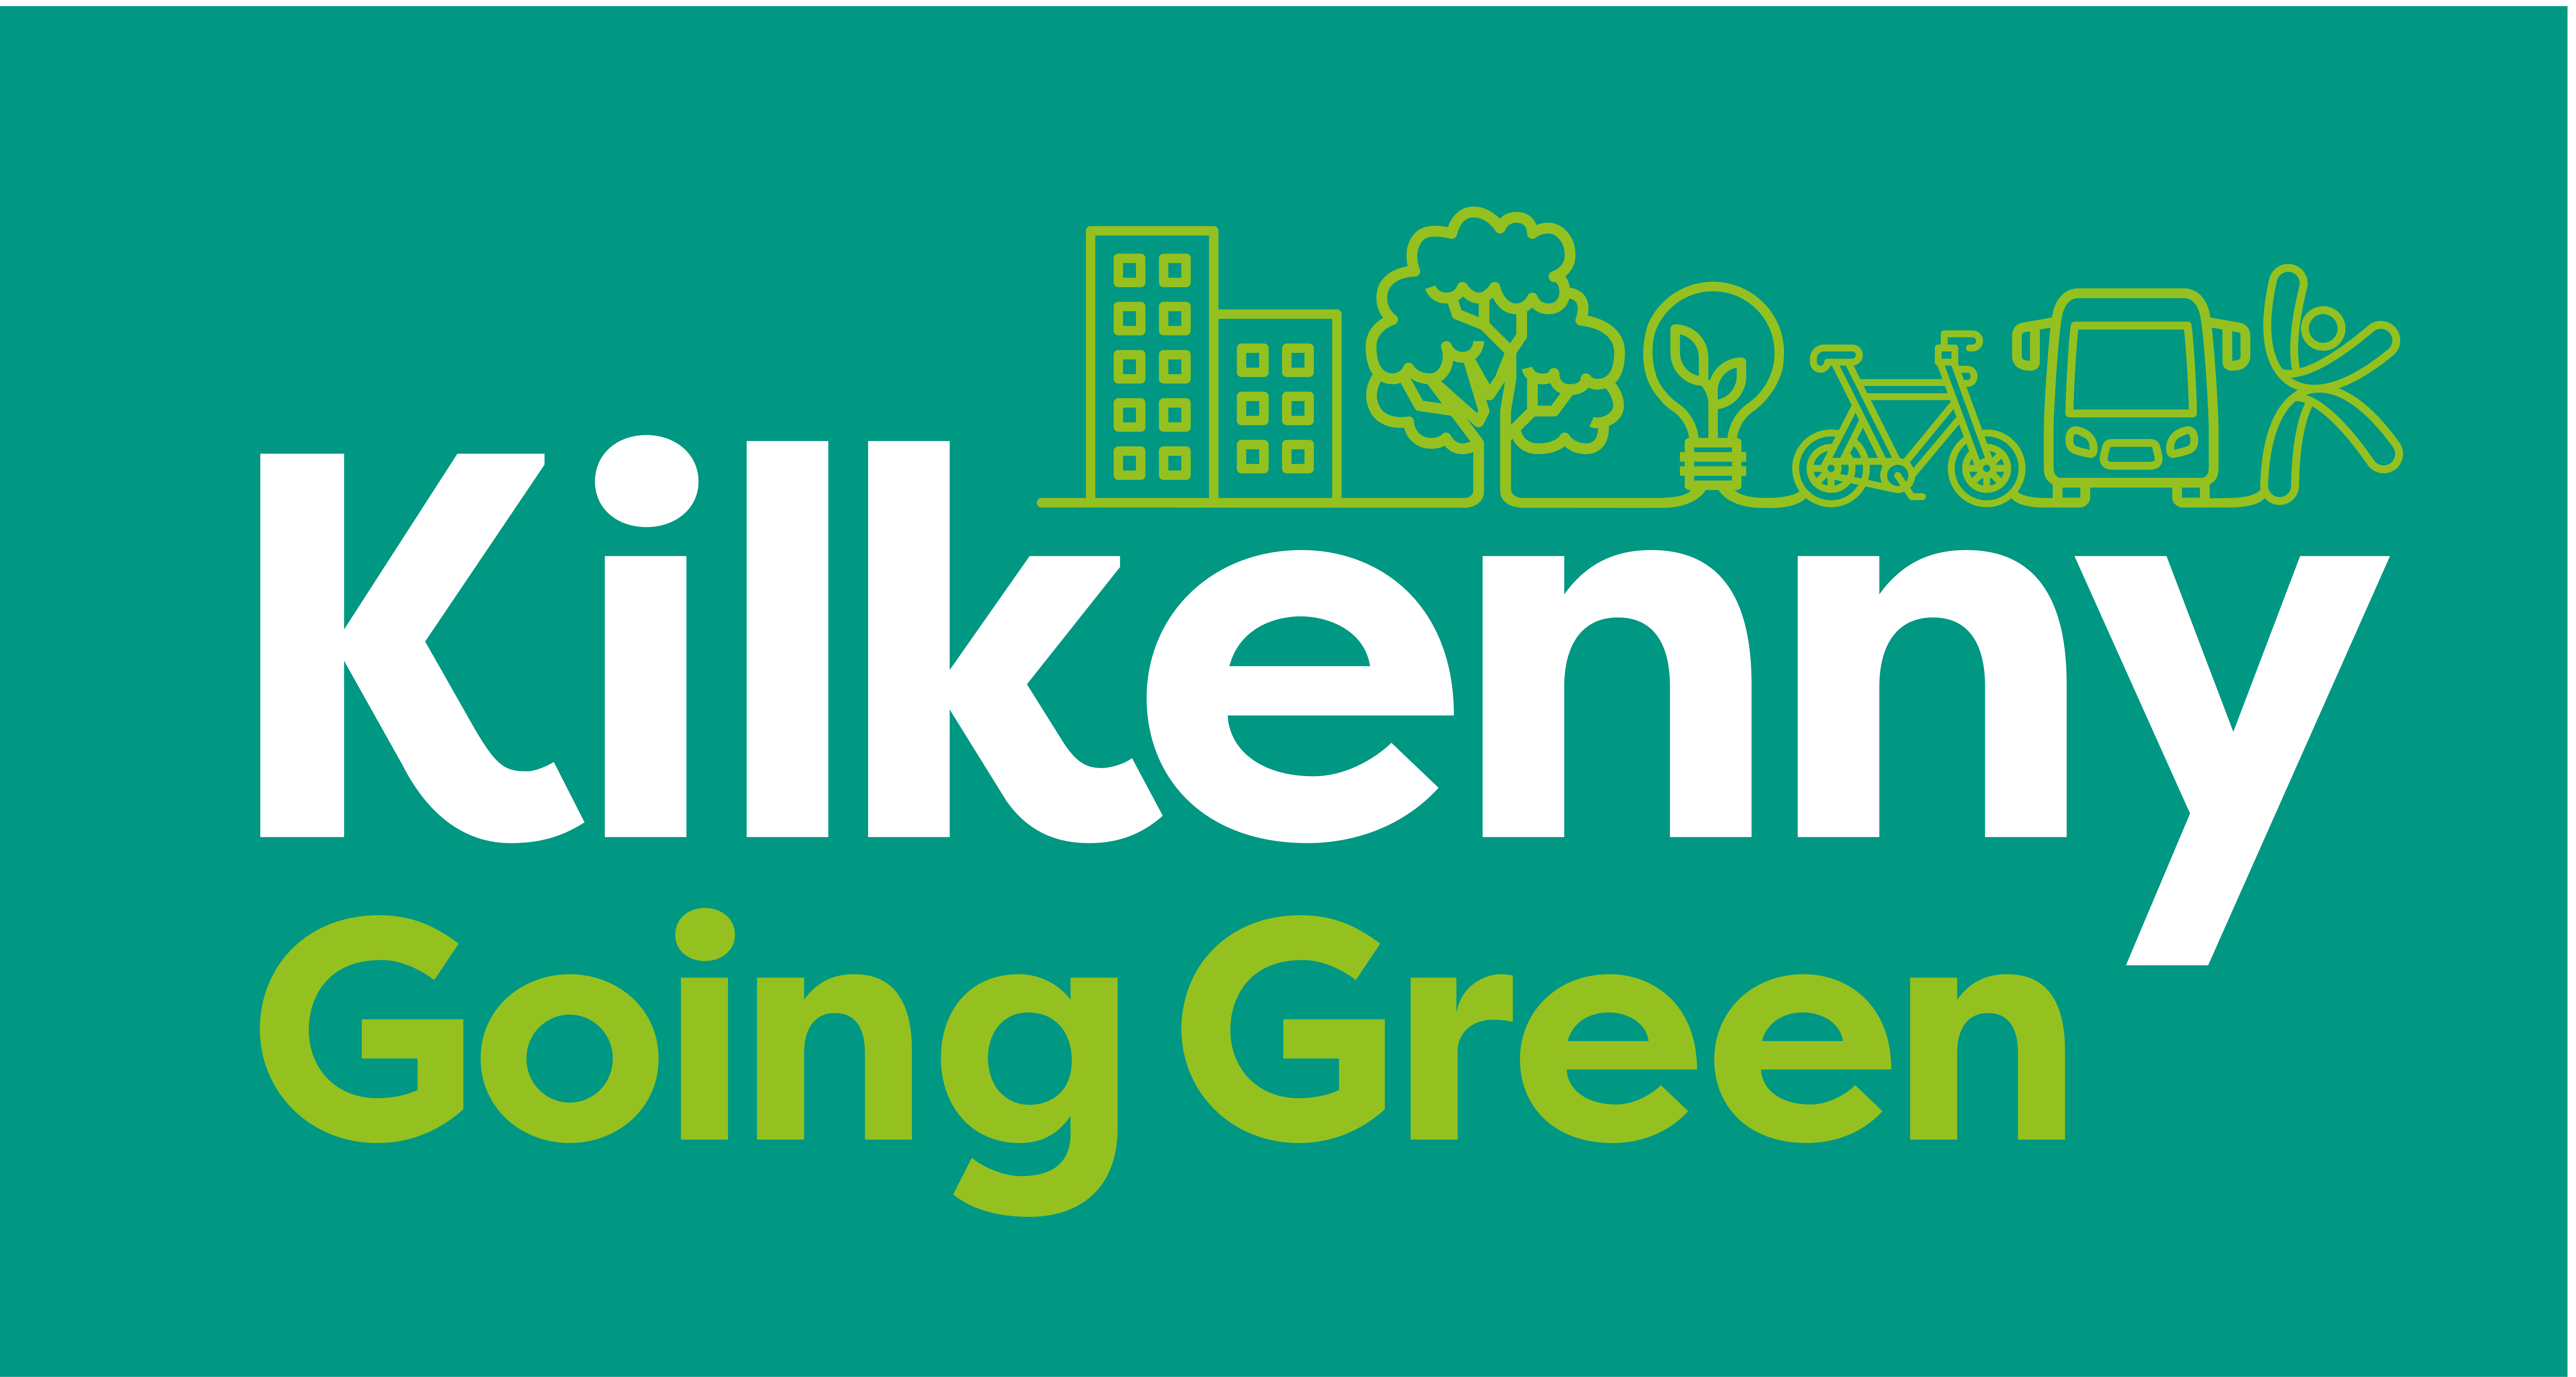 Kilkenny-Going-Green_marchio-principale-colore invertito